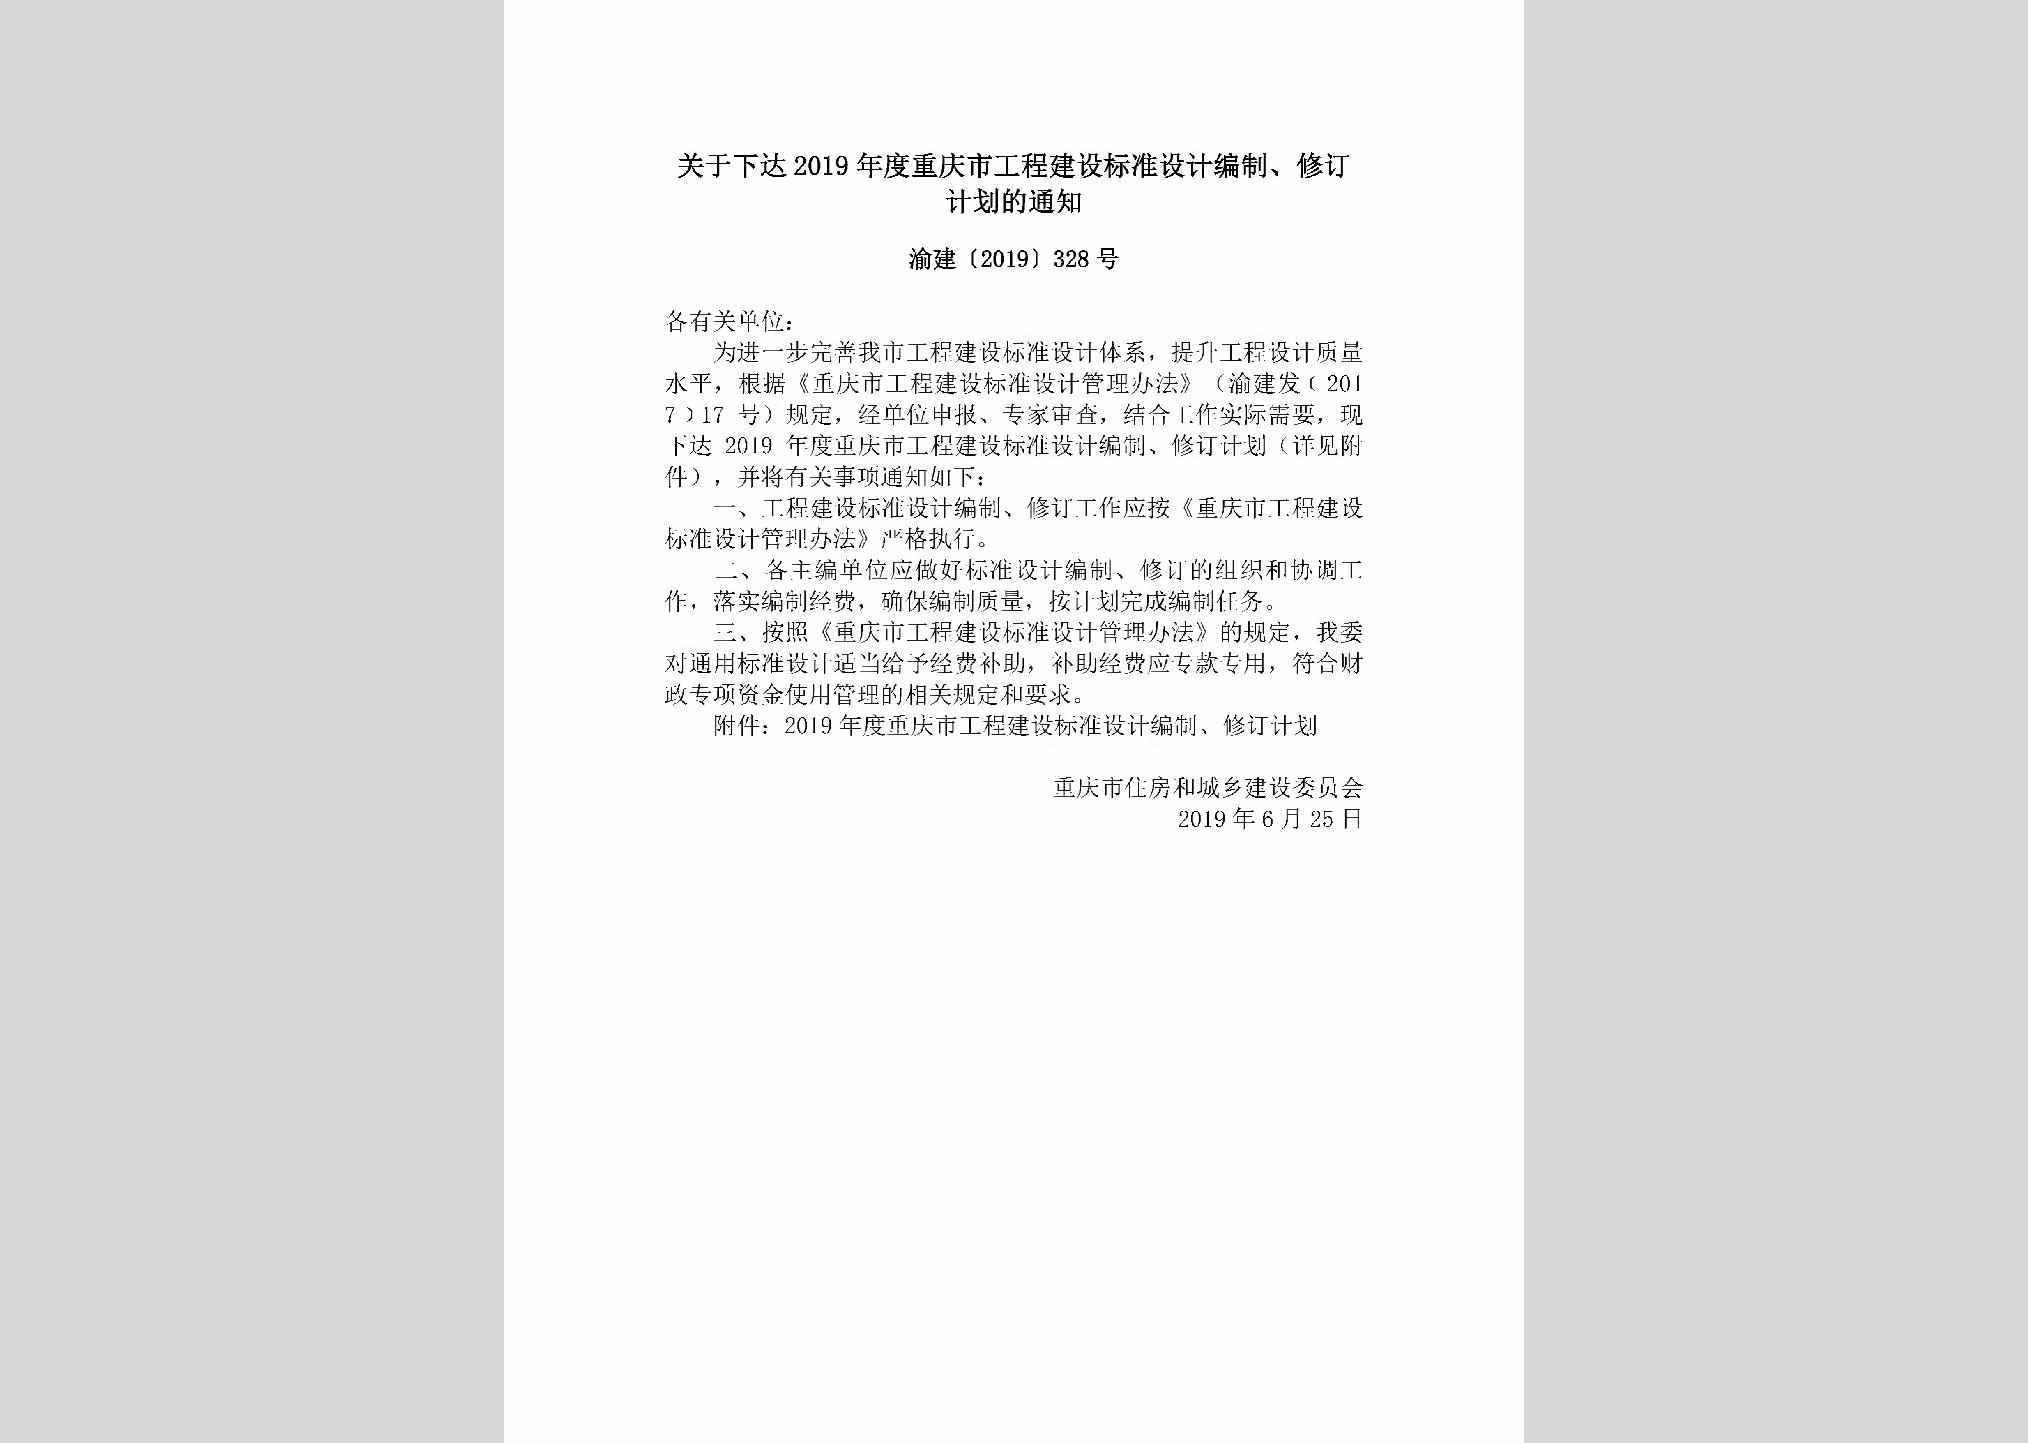 渝建[2019]328号：关于下达2019年度重庆市工程建设标准设计编制、修订计划的通知